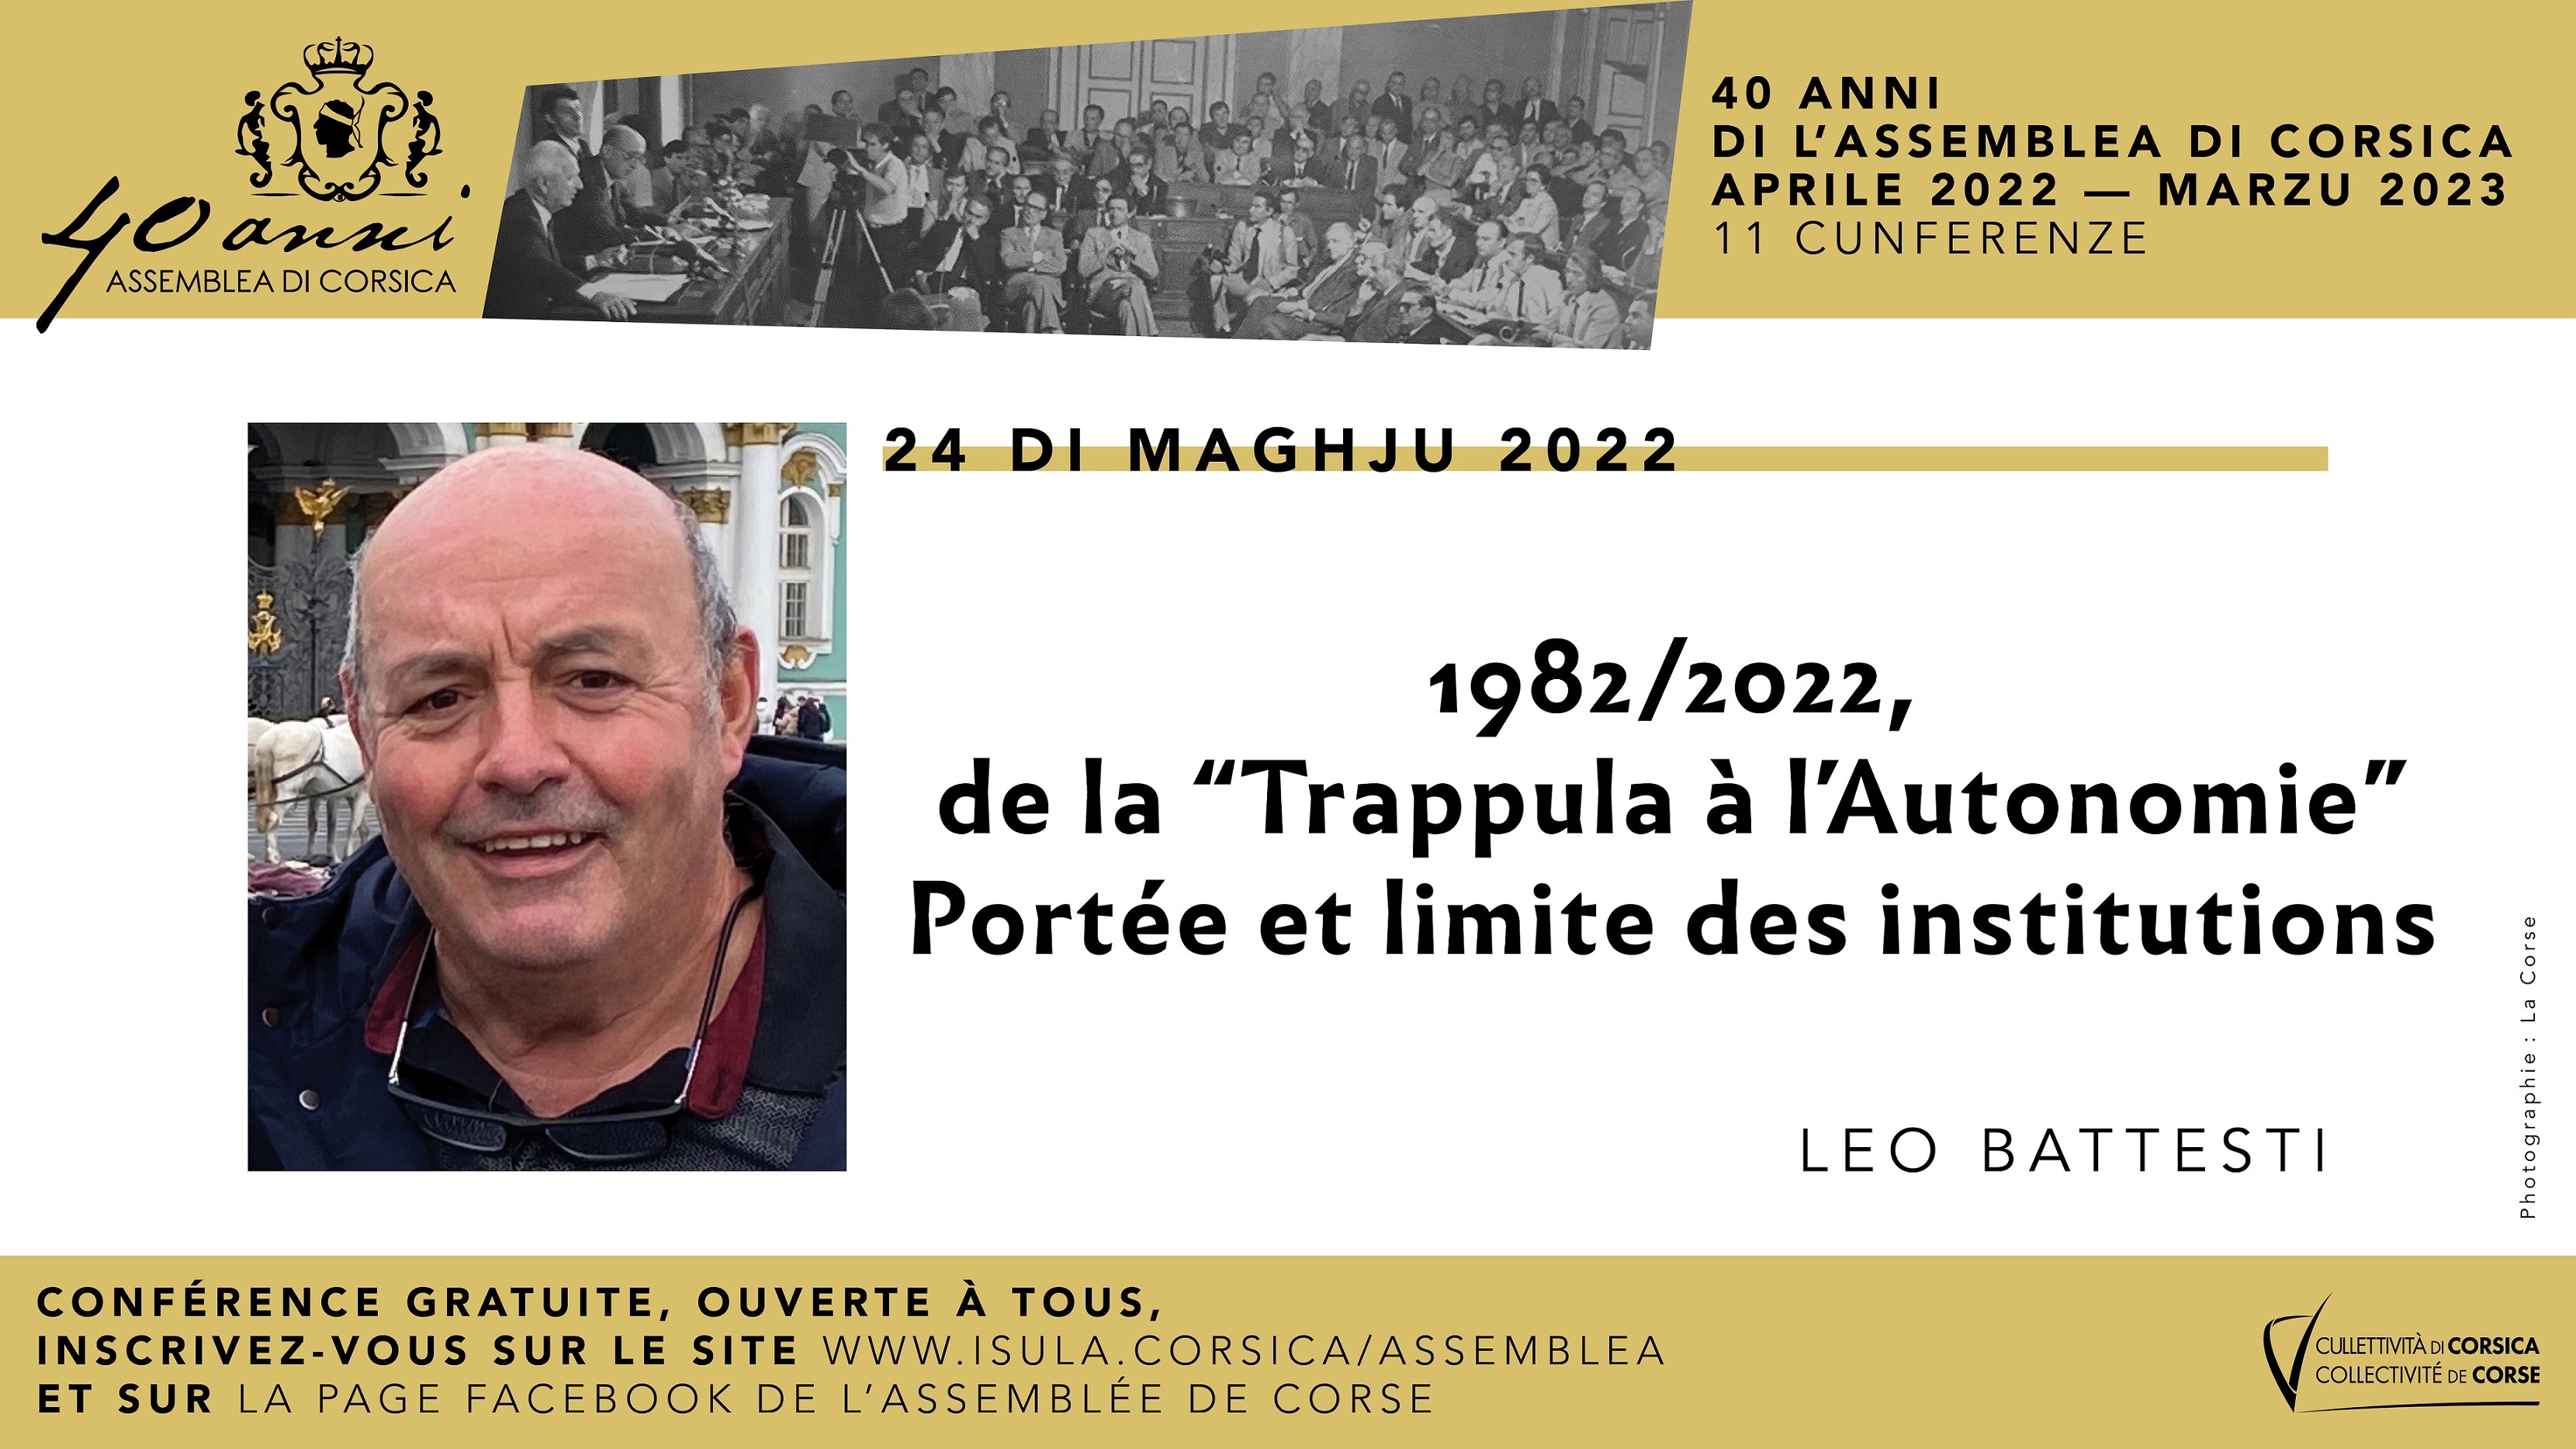 Leo Battesti poursuit le cycle de conférences consacré aux 40 ans de l'Assemblea di Corsica 